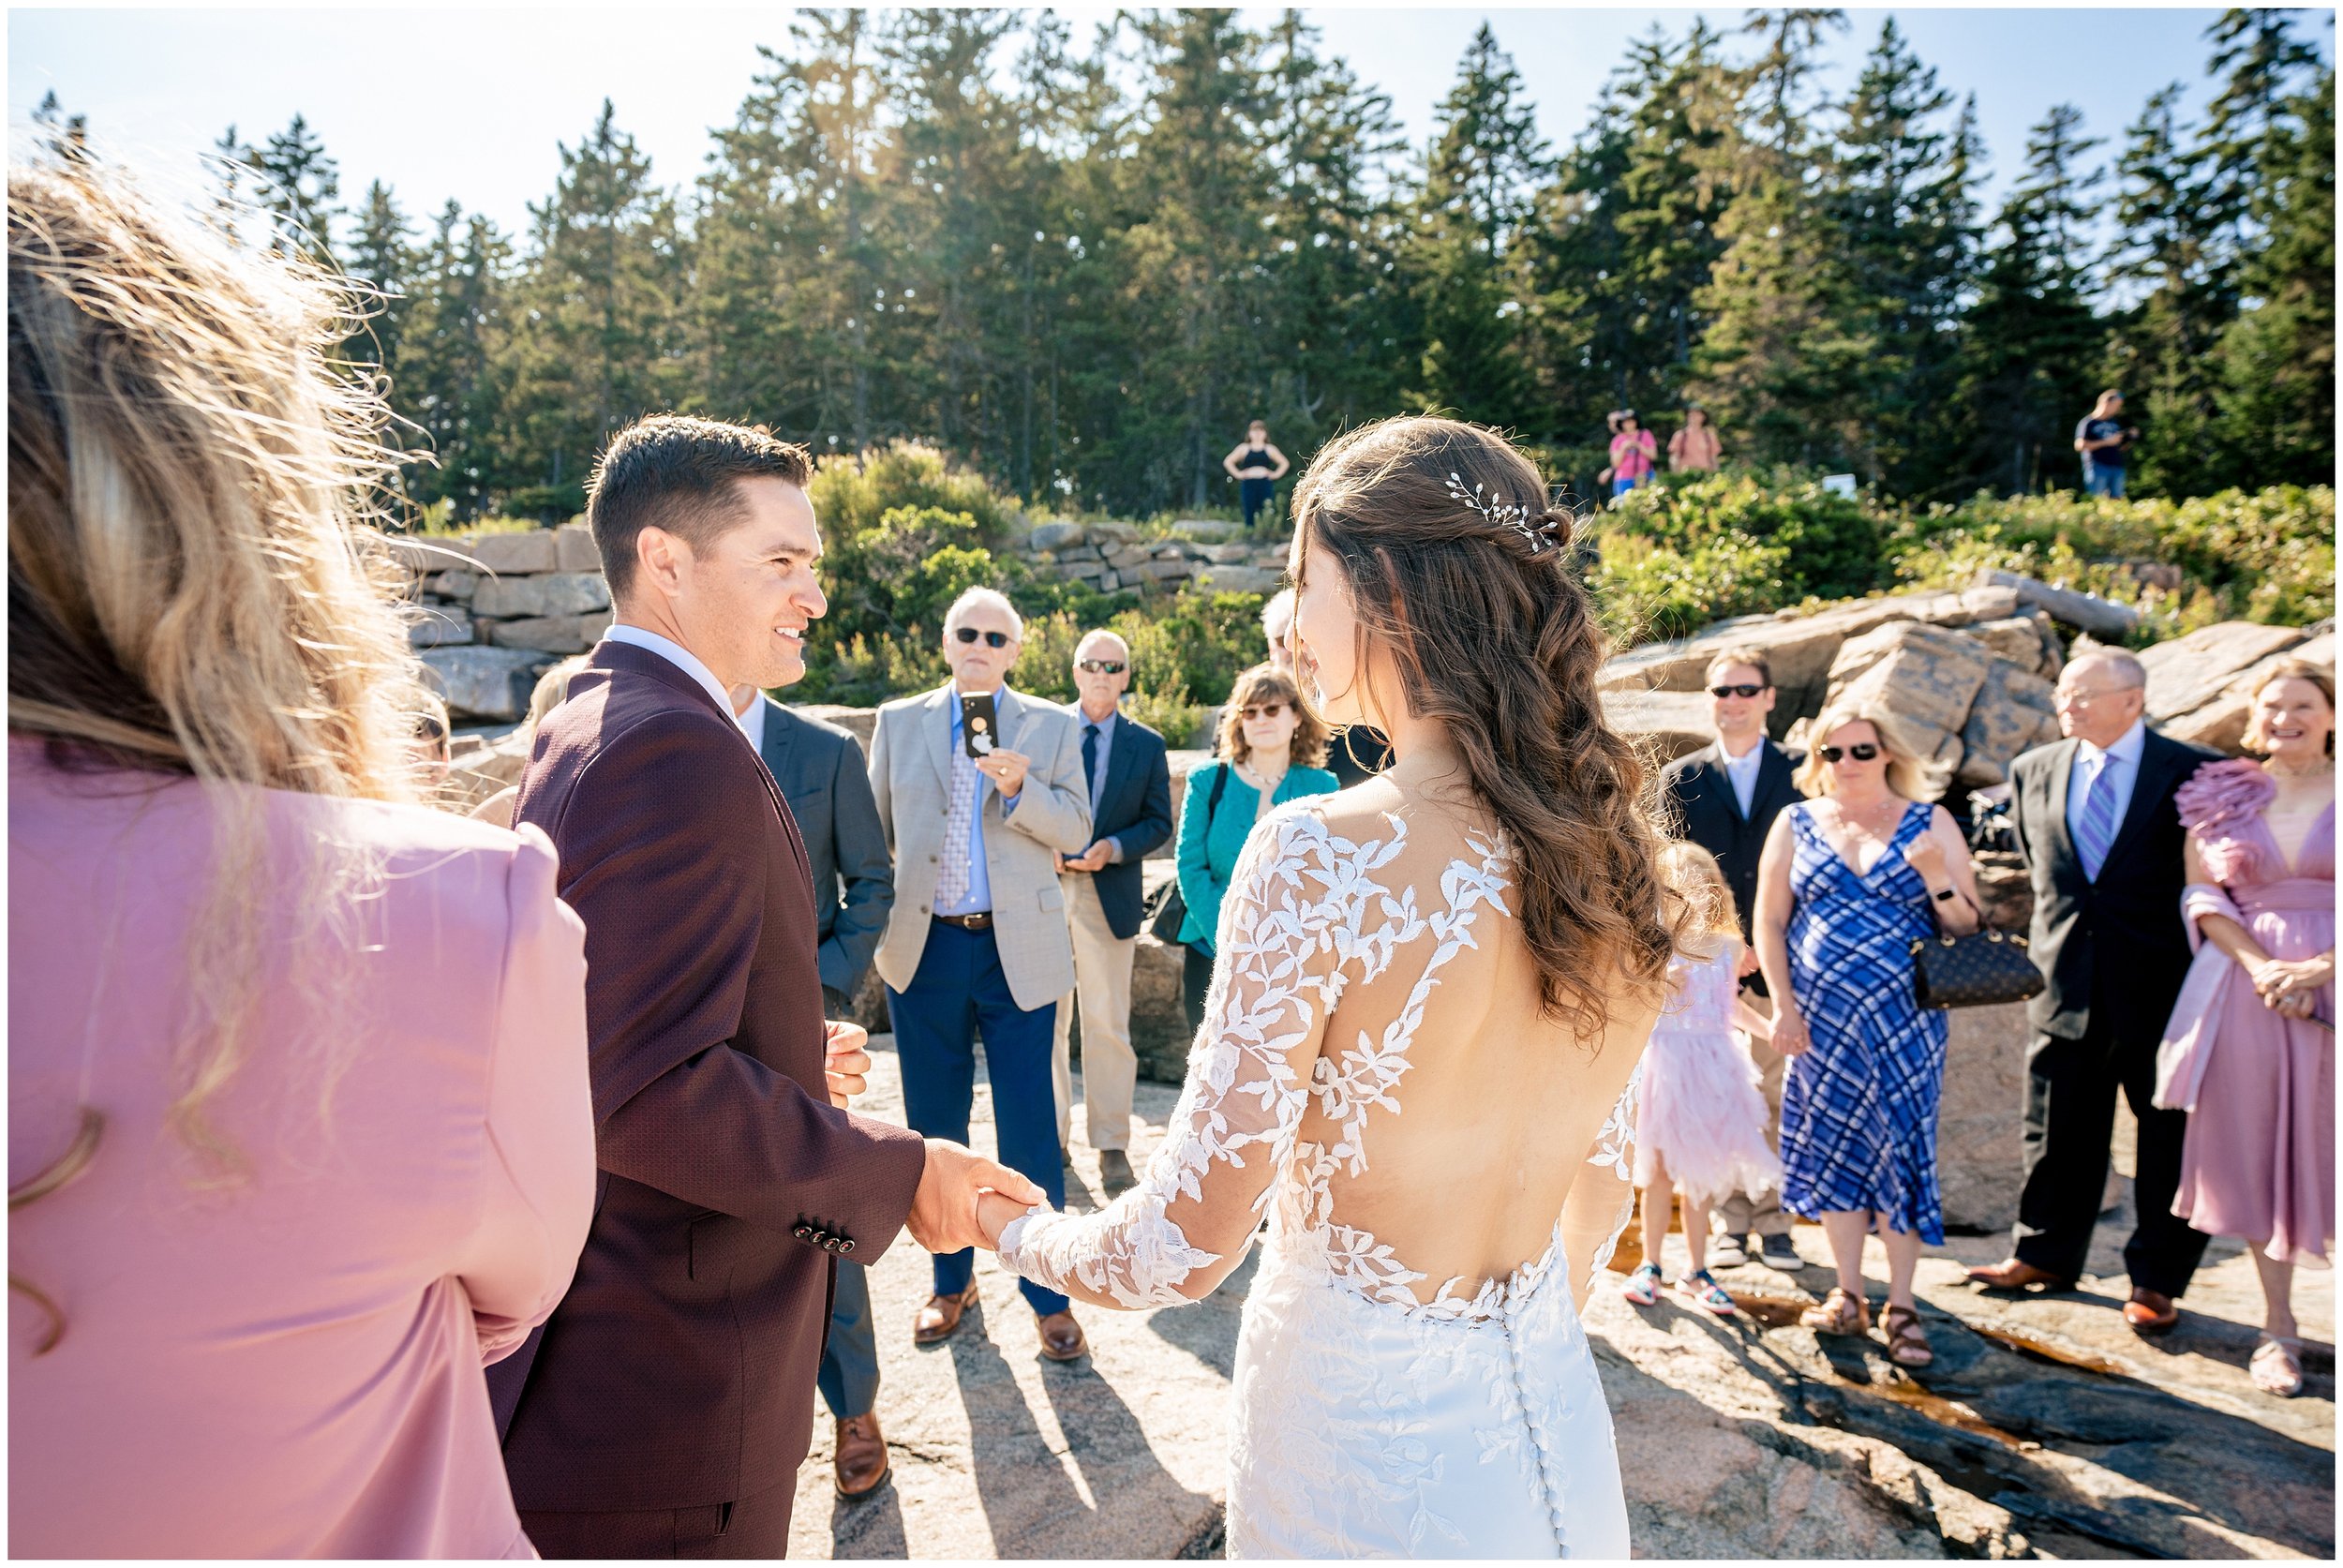 Acadia National Park Wedding Photographers, Bar Harbor Wedding Photographers, Two Adventurous Souls- 082423_0033.jpg